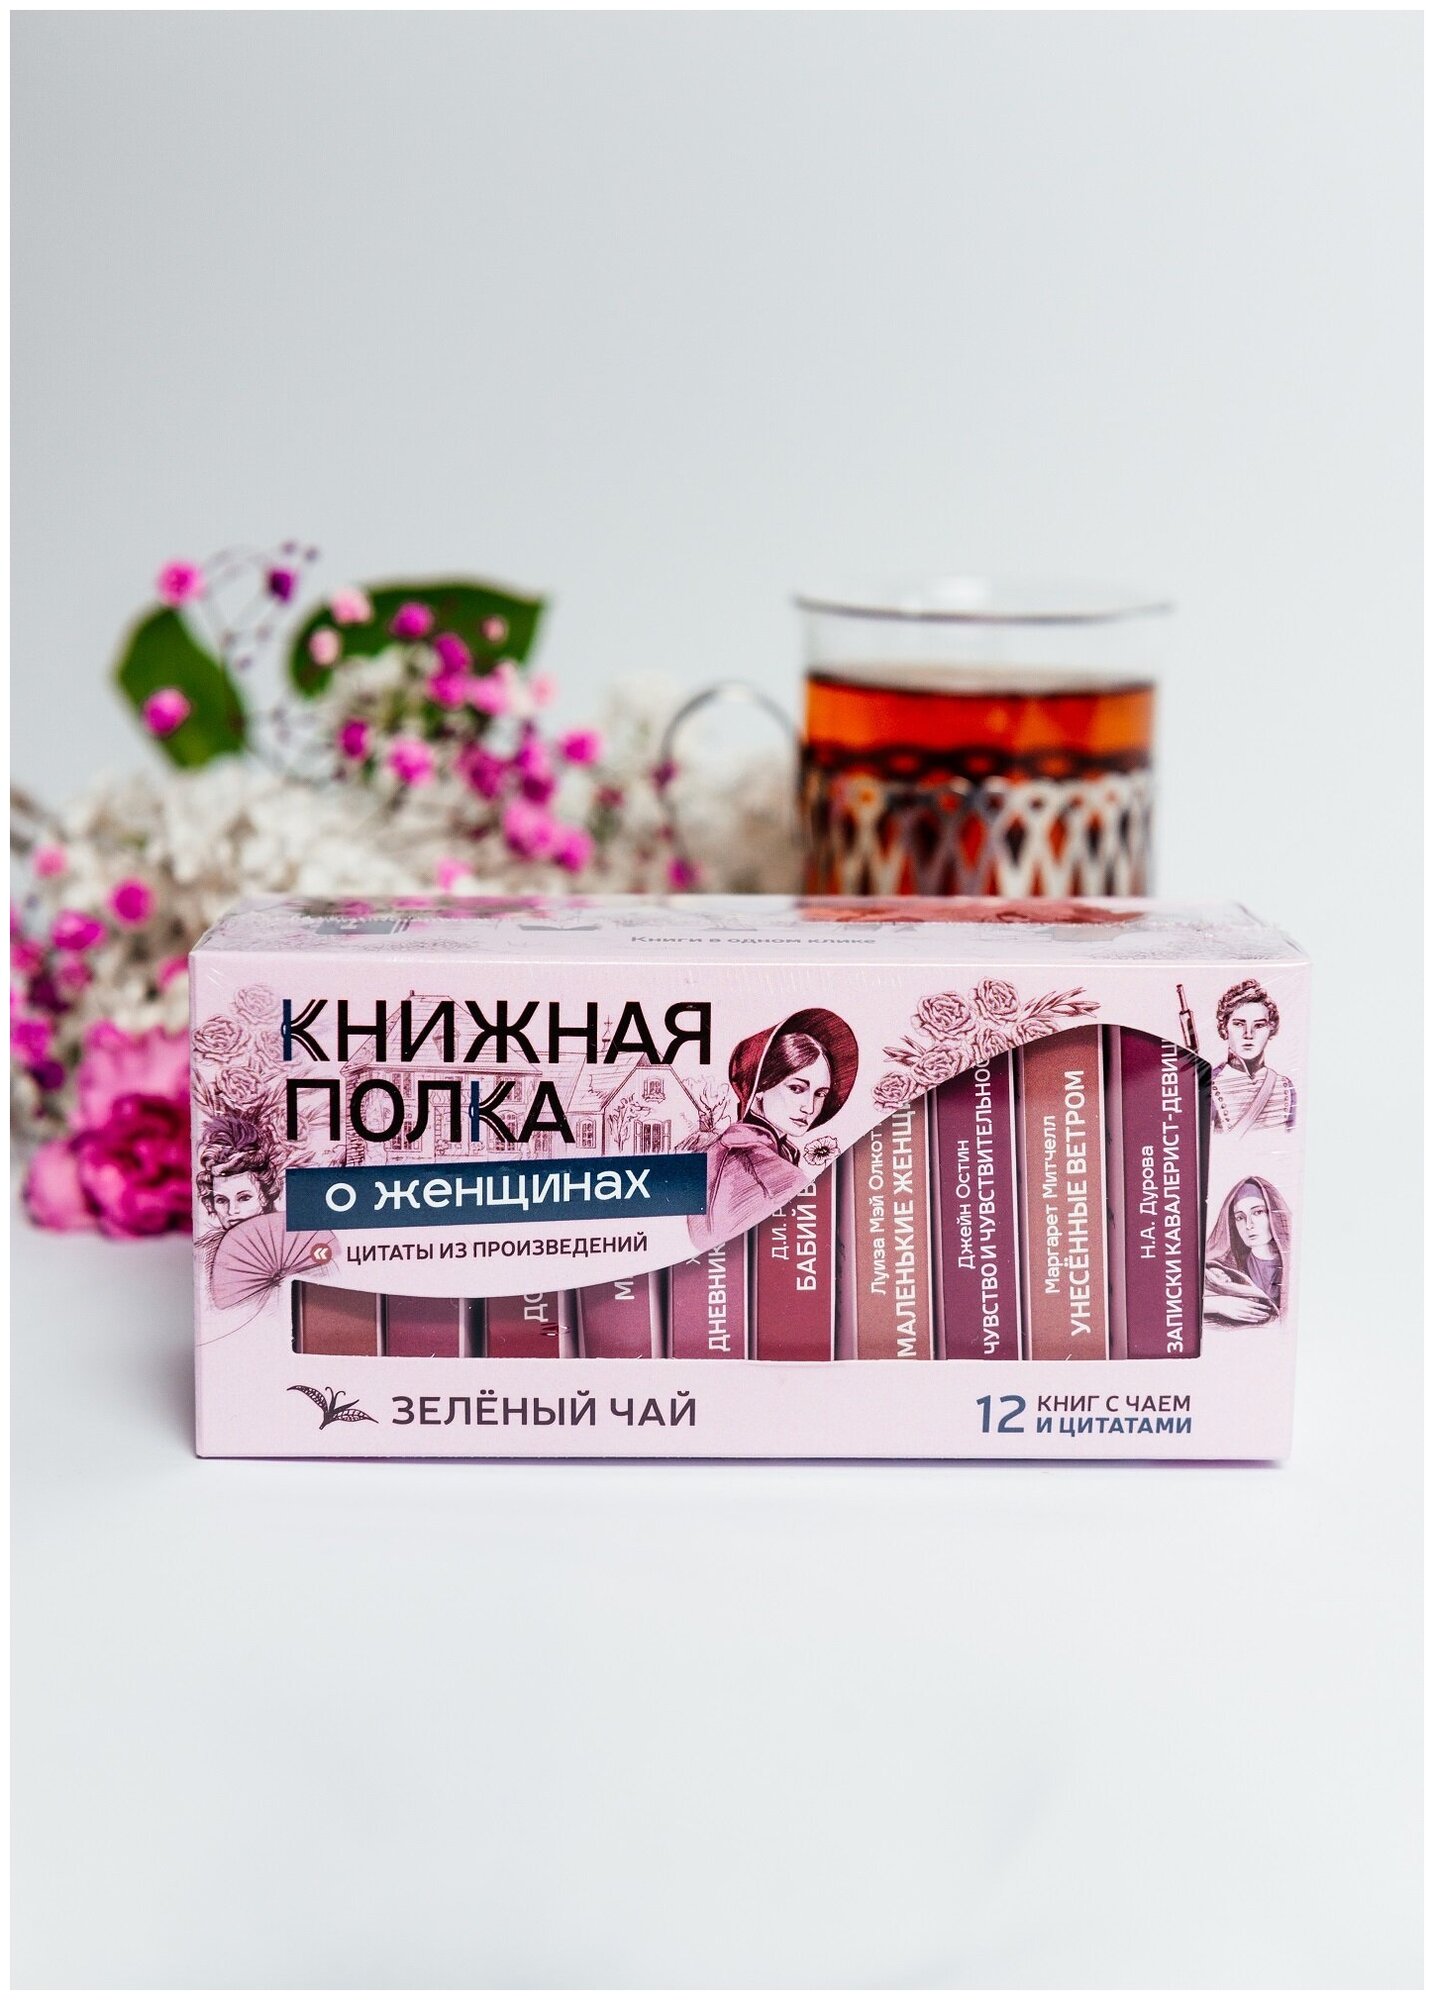 Книги в пачке чая "Книжная полка о женщинах", чай подарочный зеленый - фотография № 3